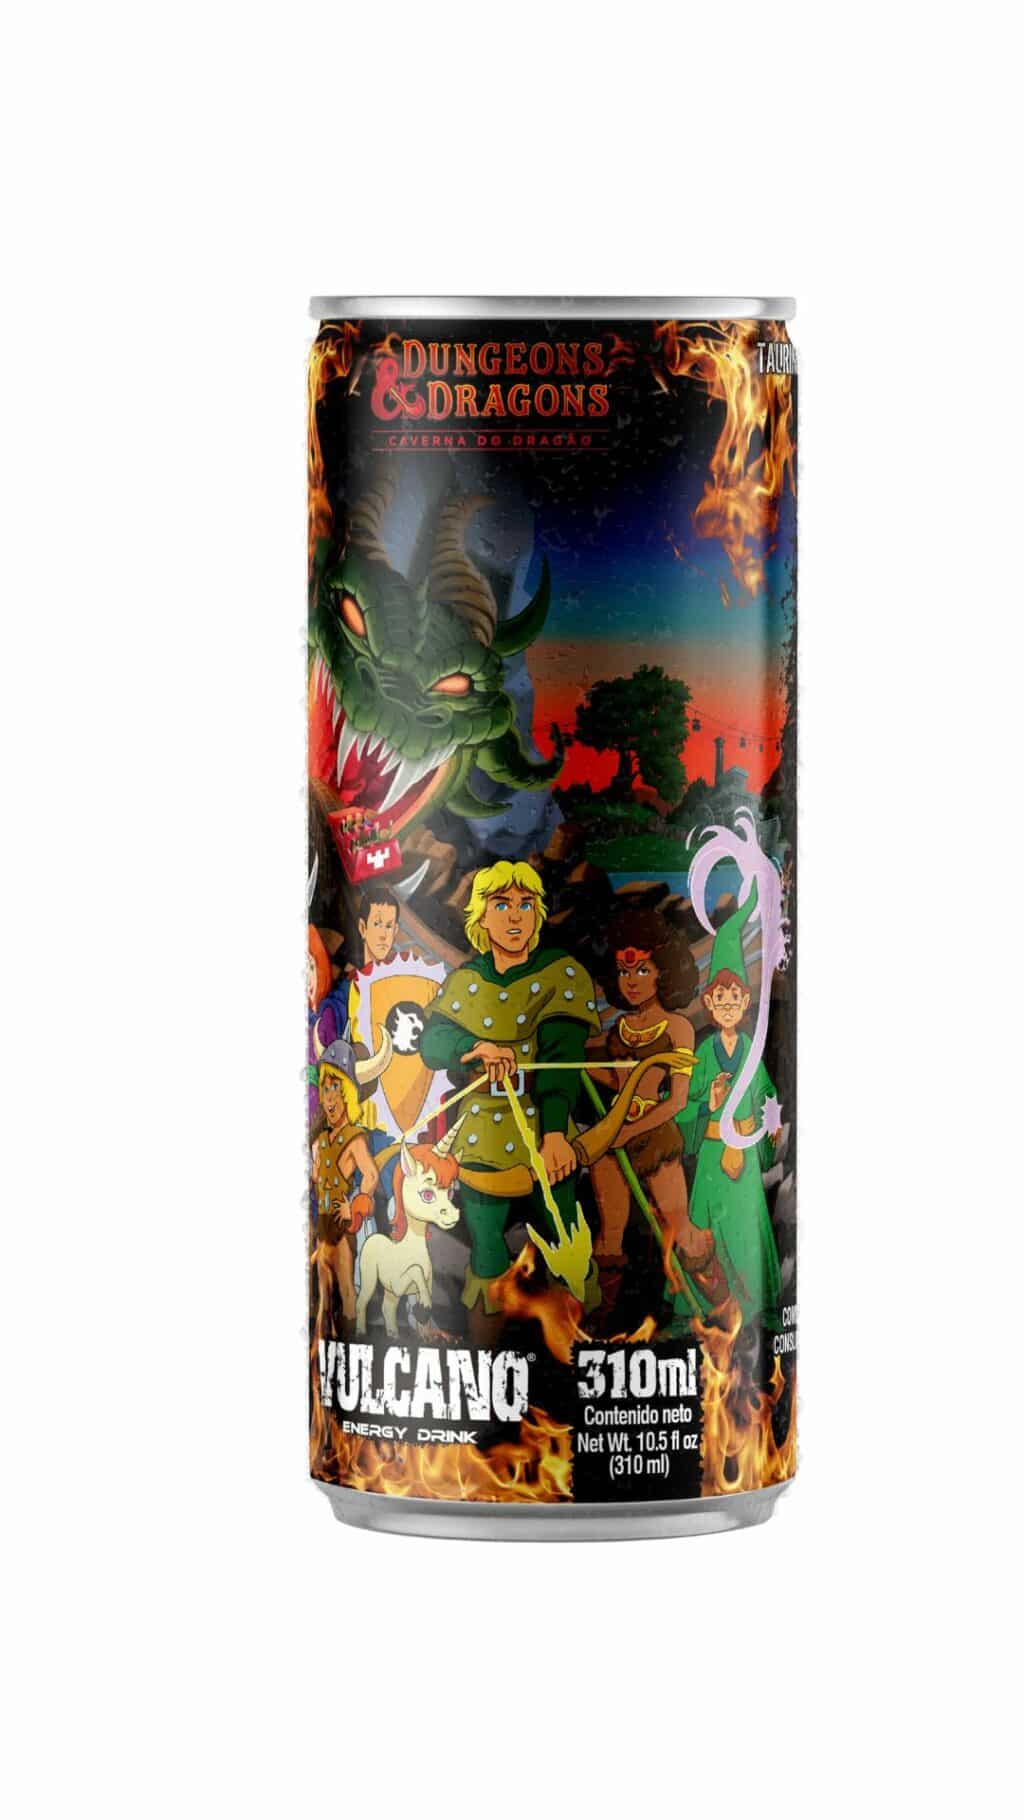 Vulcano Energy Drink lança embalagens temáticas de Caverna do Dragão